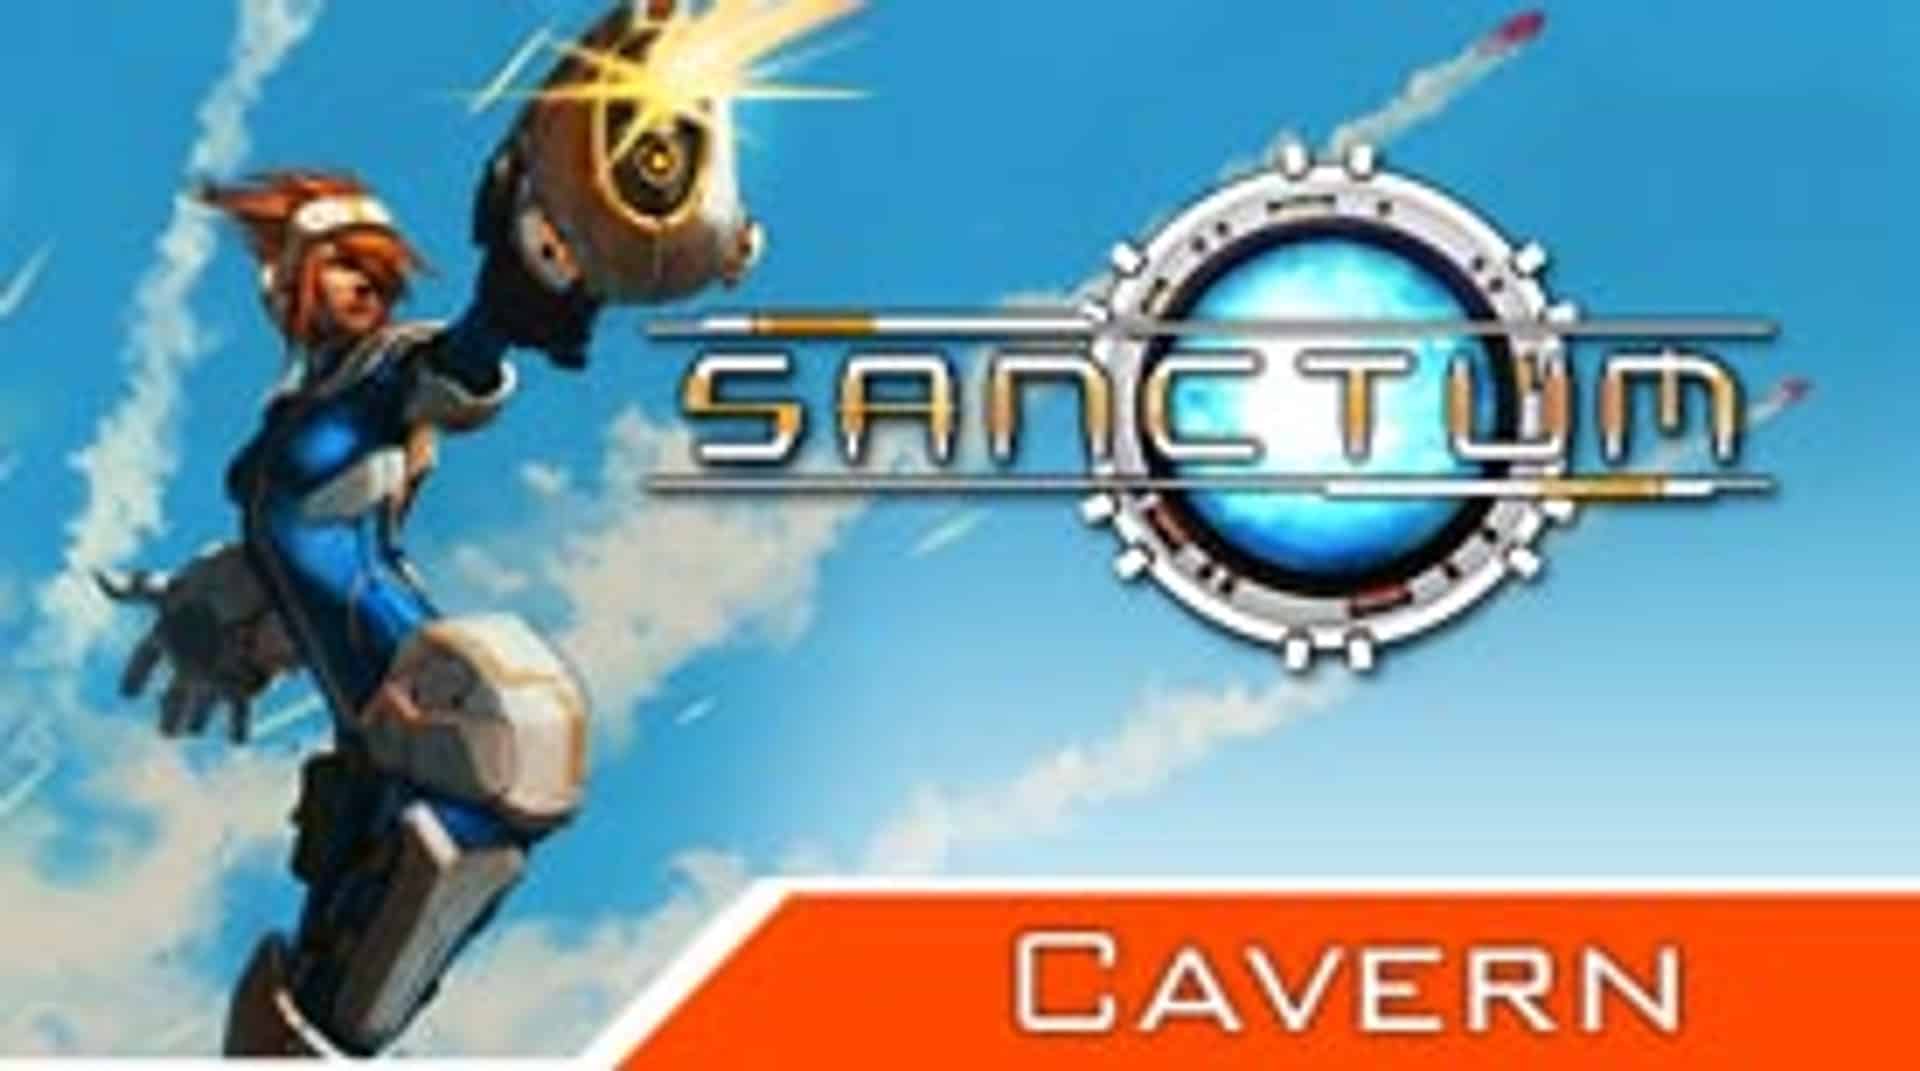 Sanctum: Cavern